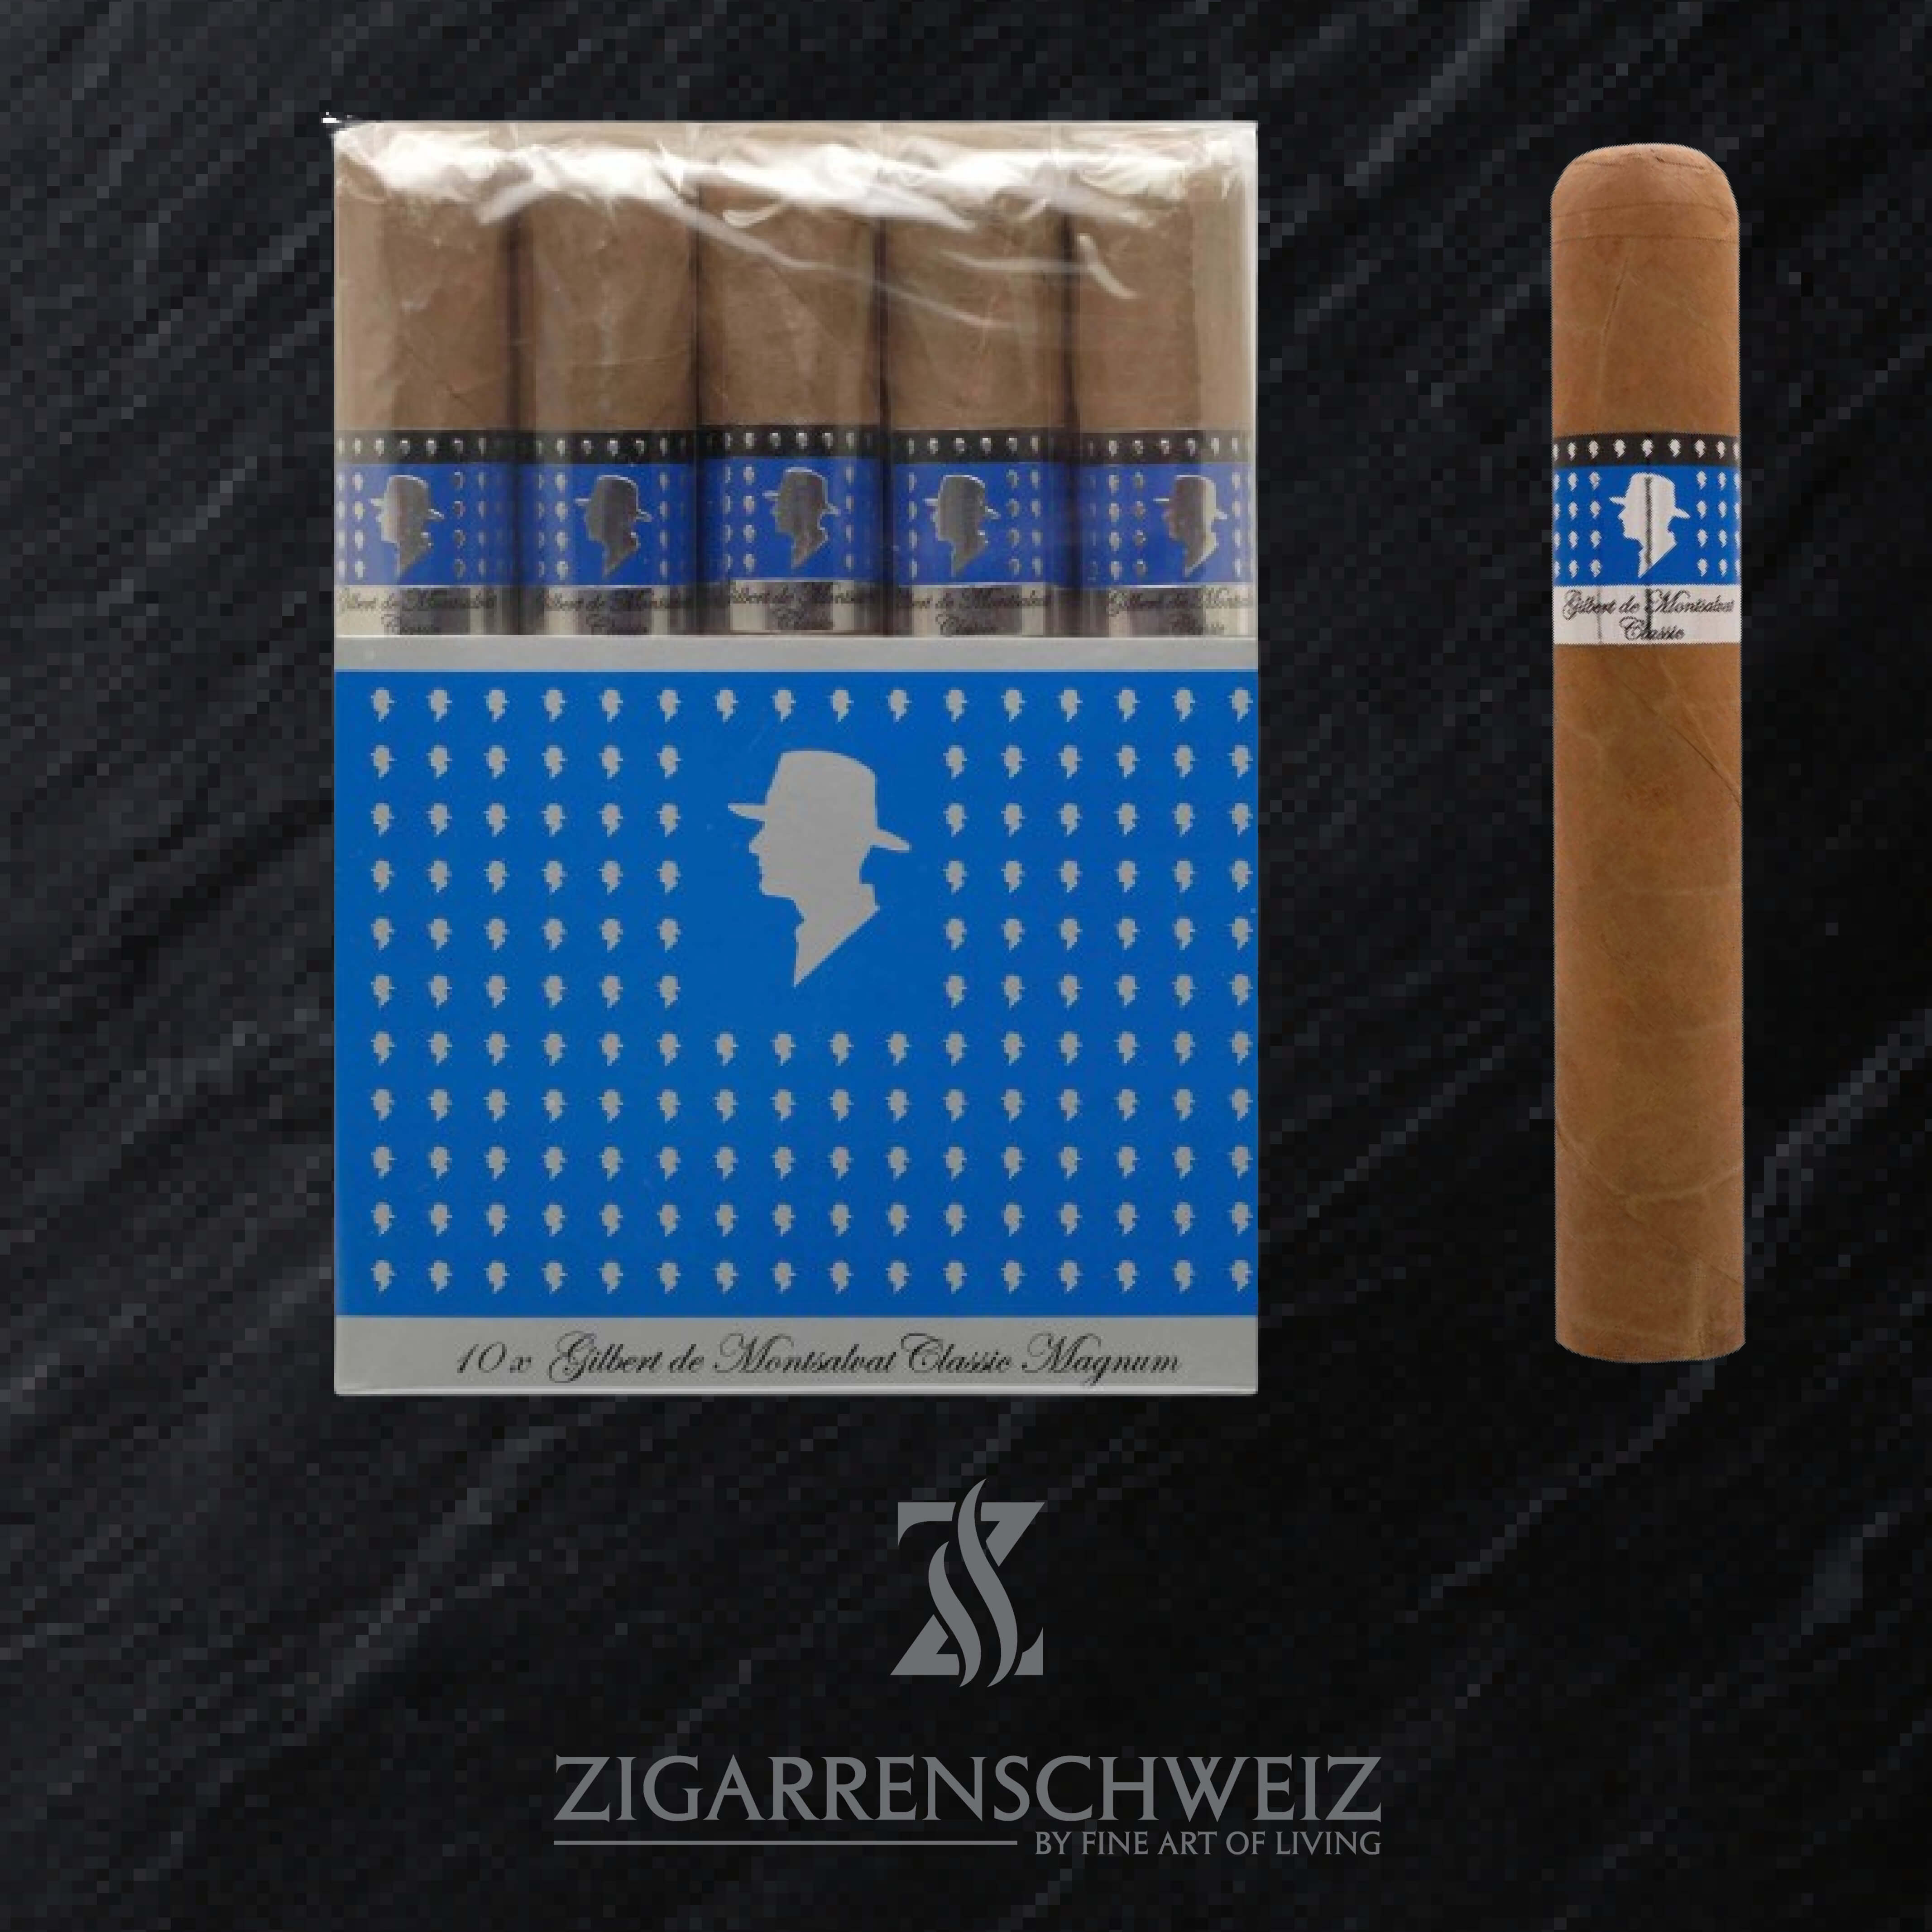 Gilbert de Montsalvat Classic Magnum Zigarren Bundle